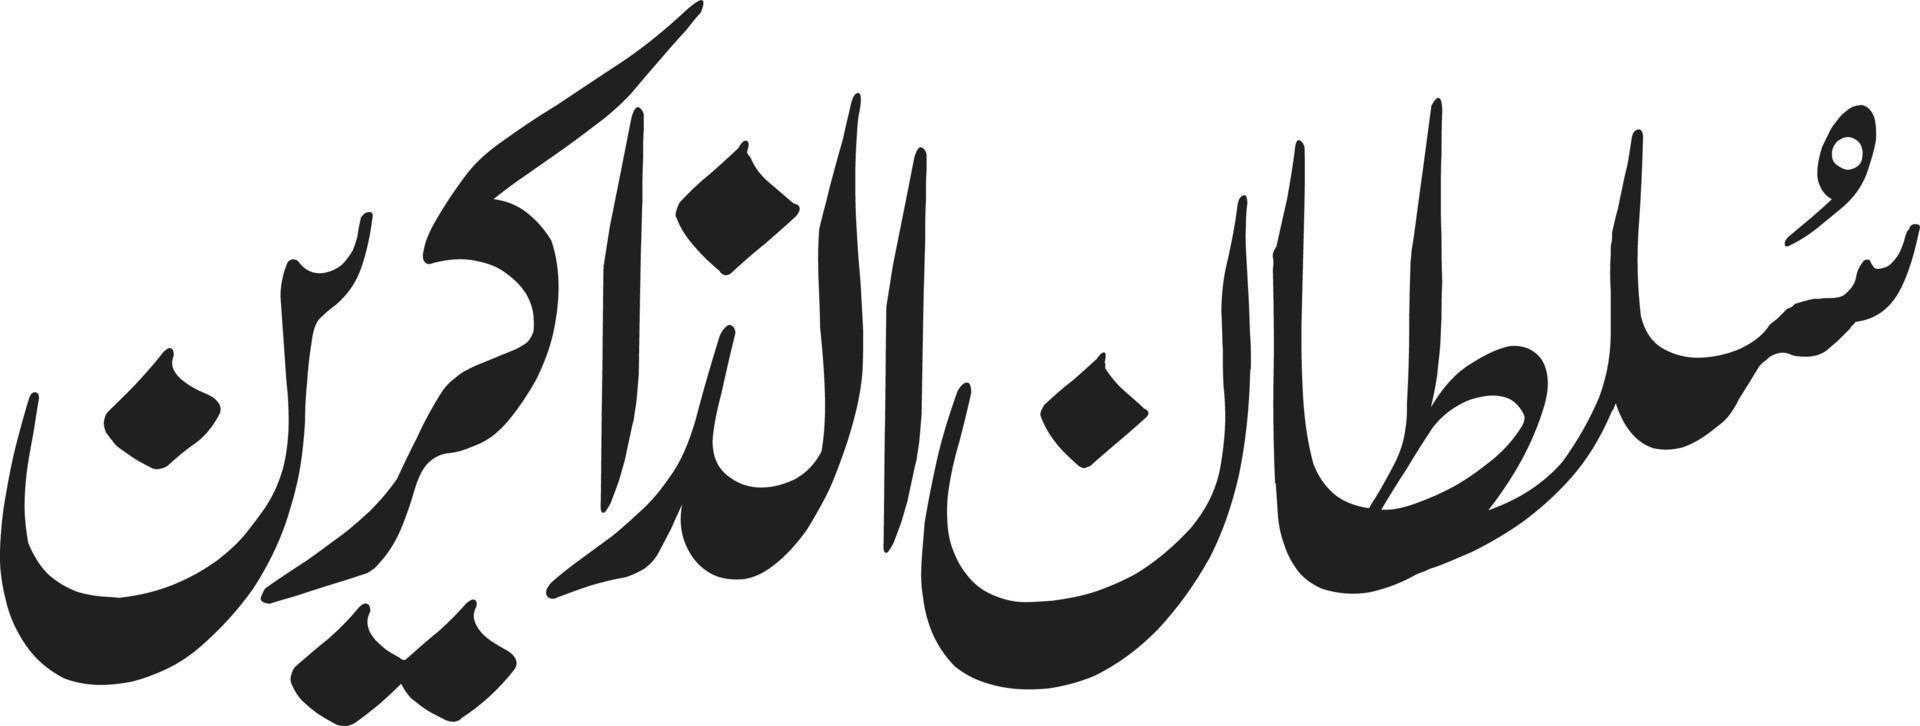 sultan alzakraan titel Islamitisch Urdu Arabisch schoonschrift vrij vector